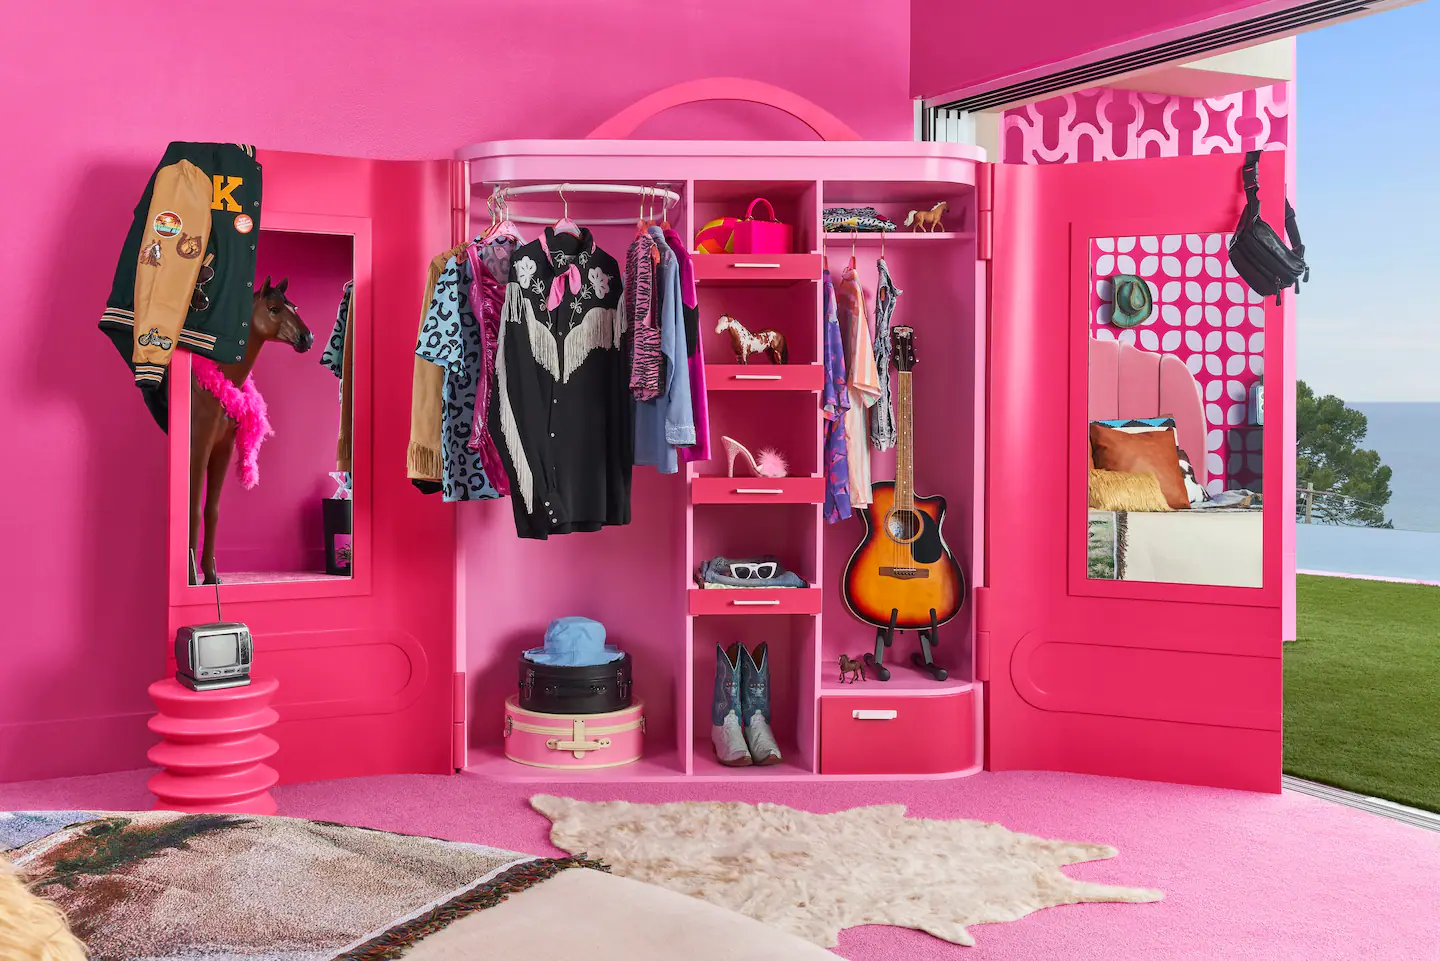 Las personas que puedan hospedarse en la casa de Barbie se llevarán a su casa un par de patines y una tabla de surf del guardarropa de Ken 
Foto: Airbnb